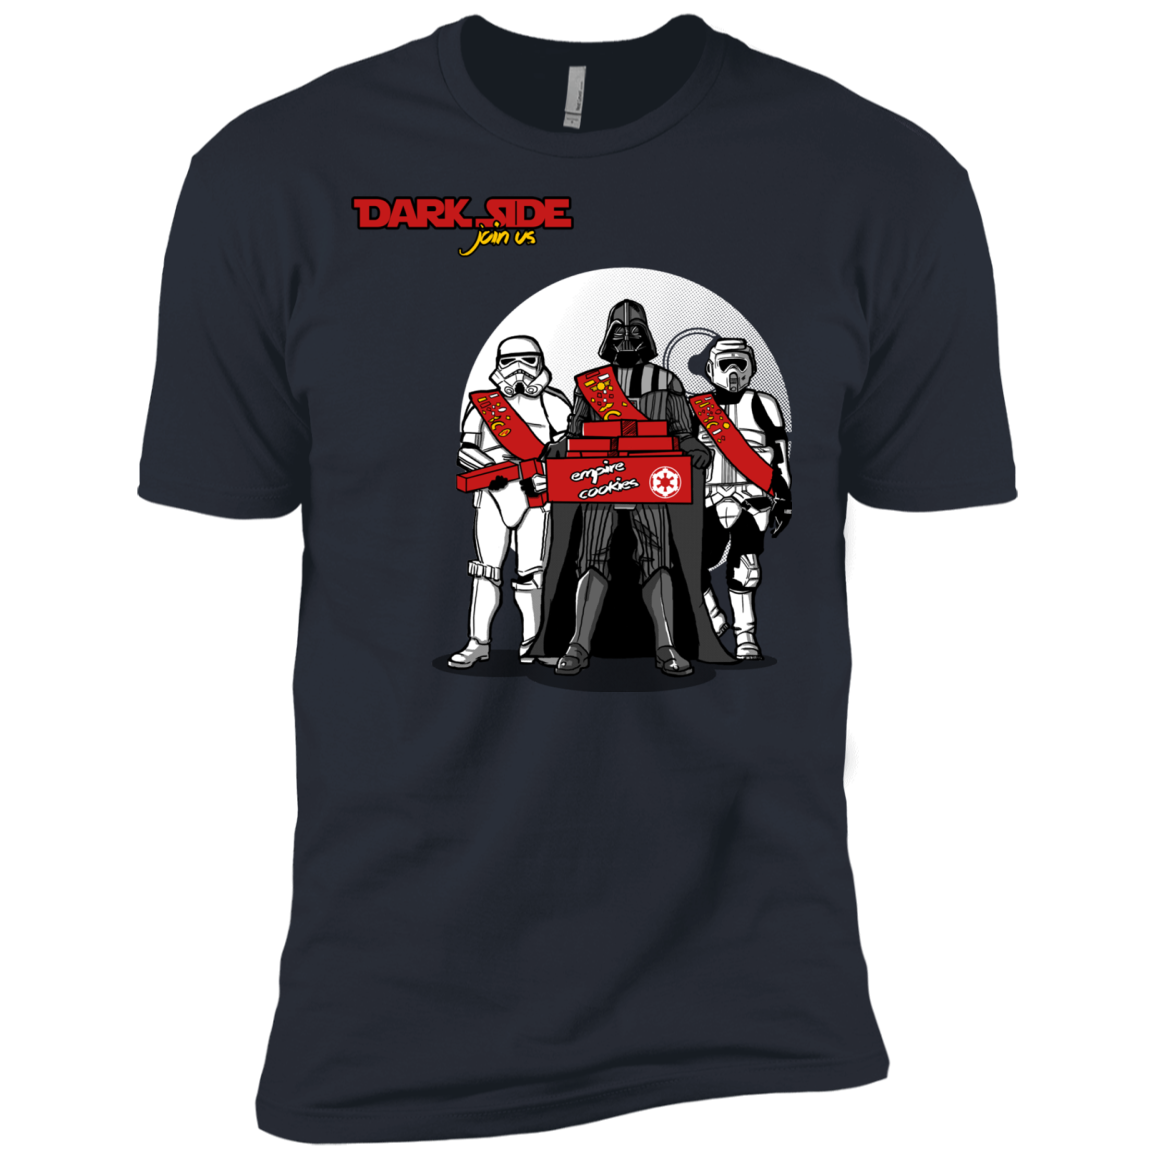 Join The Dark Side Men's Premium T-Shirt